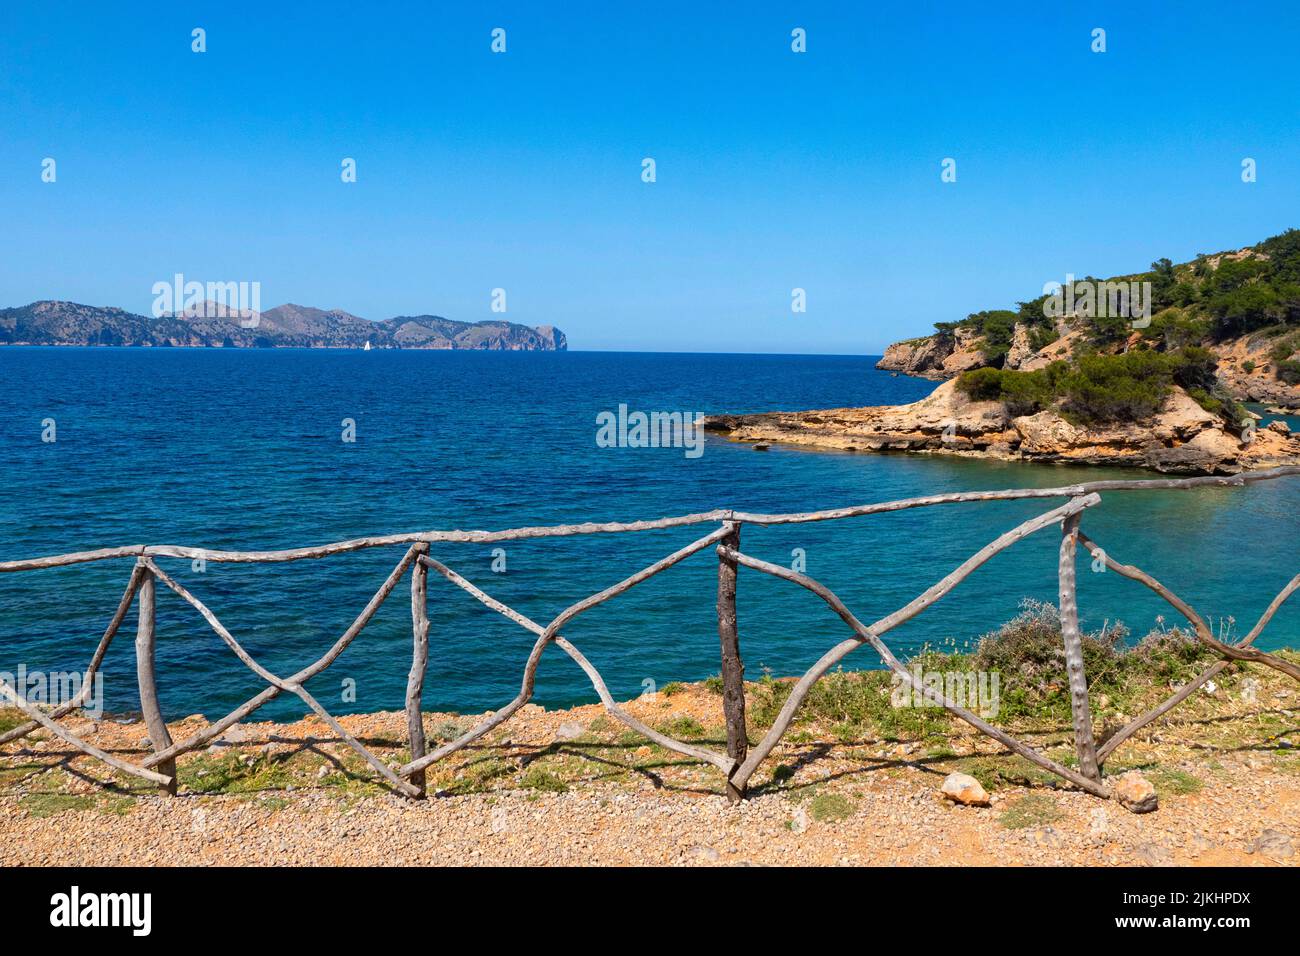 Coast near S'Illot, peninsula Victoria near Alcudia, view to Cap Formentor, Majorca, Balearic Islands, Spain Stock Photo